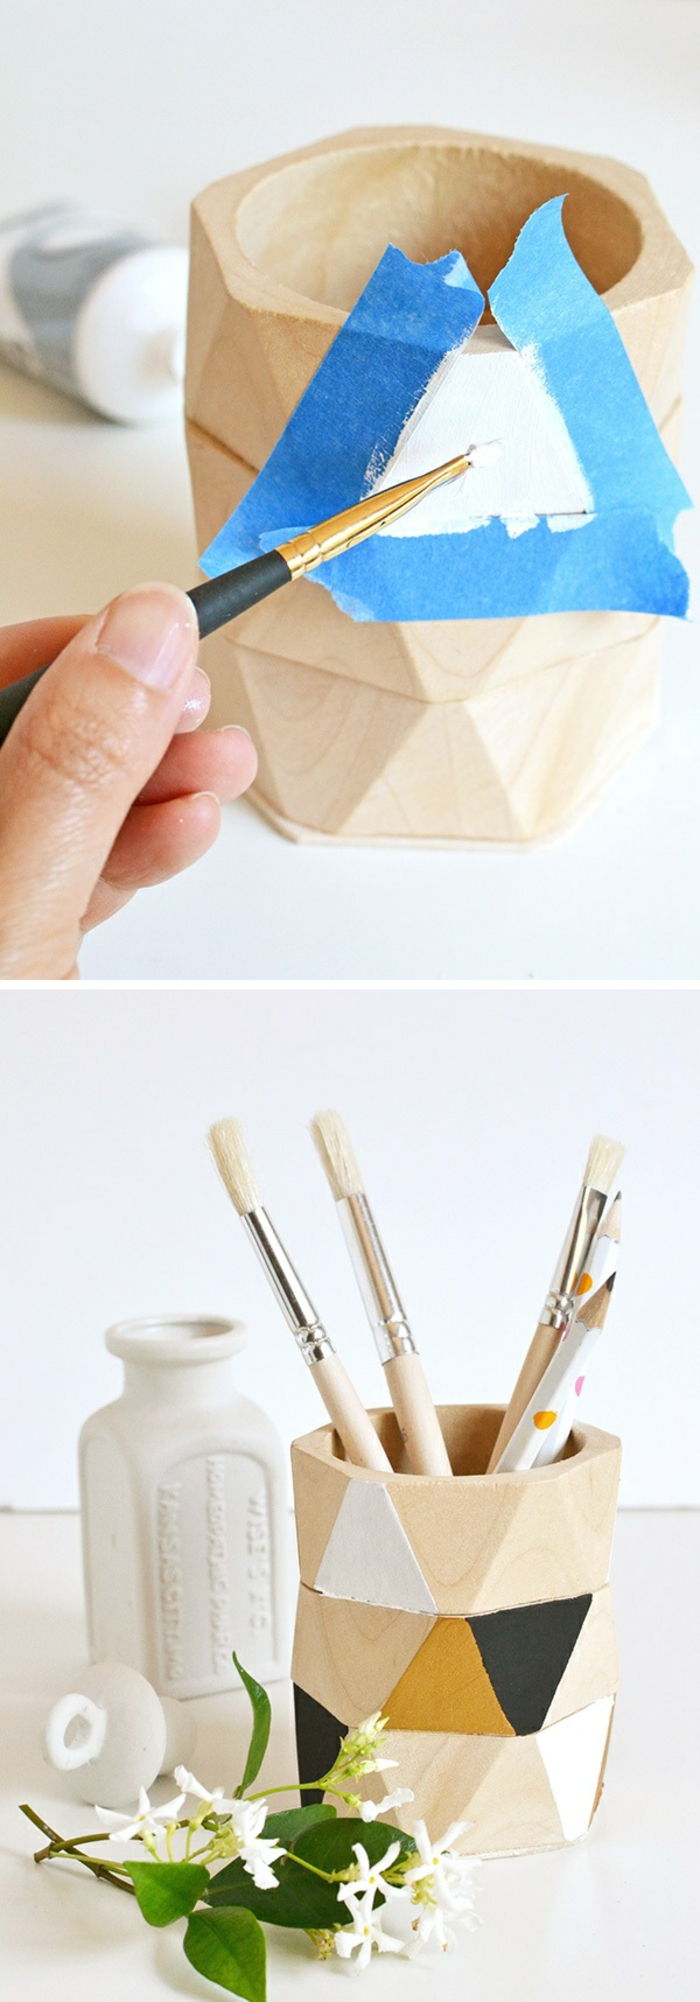 vyrobiť a zdobiť drevené držiaky ceruzky samy o sebe, lepiace pásky, farby, kefy